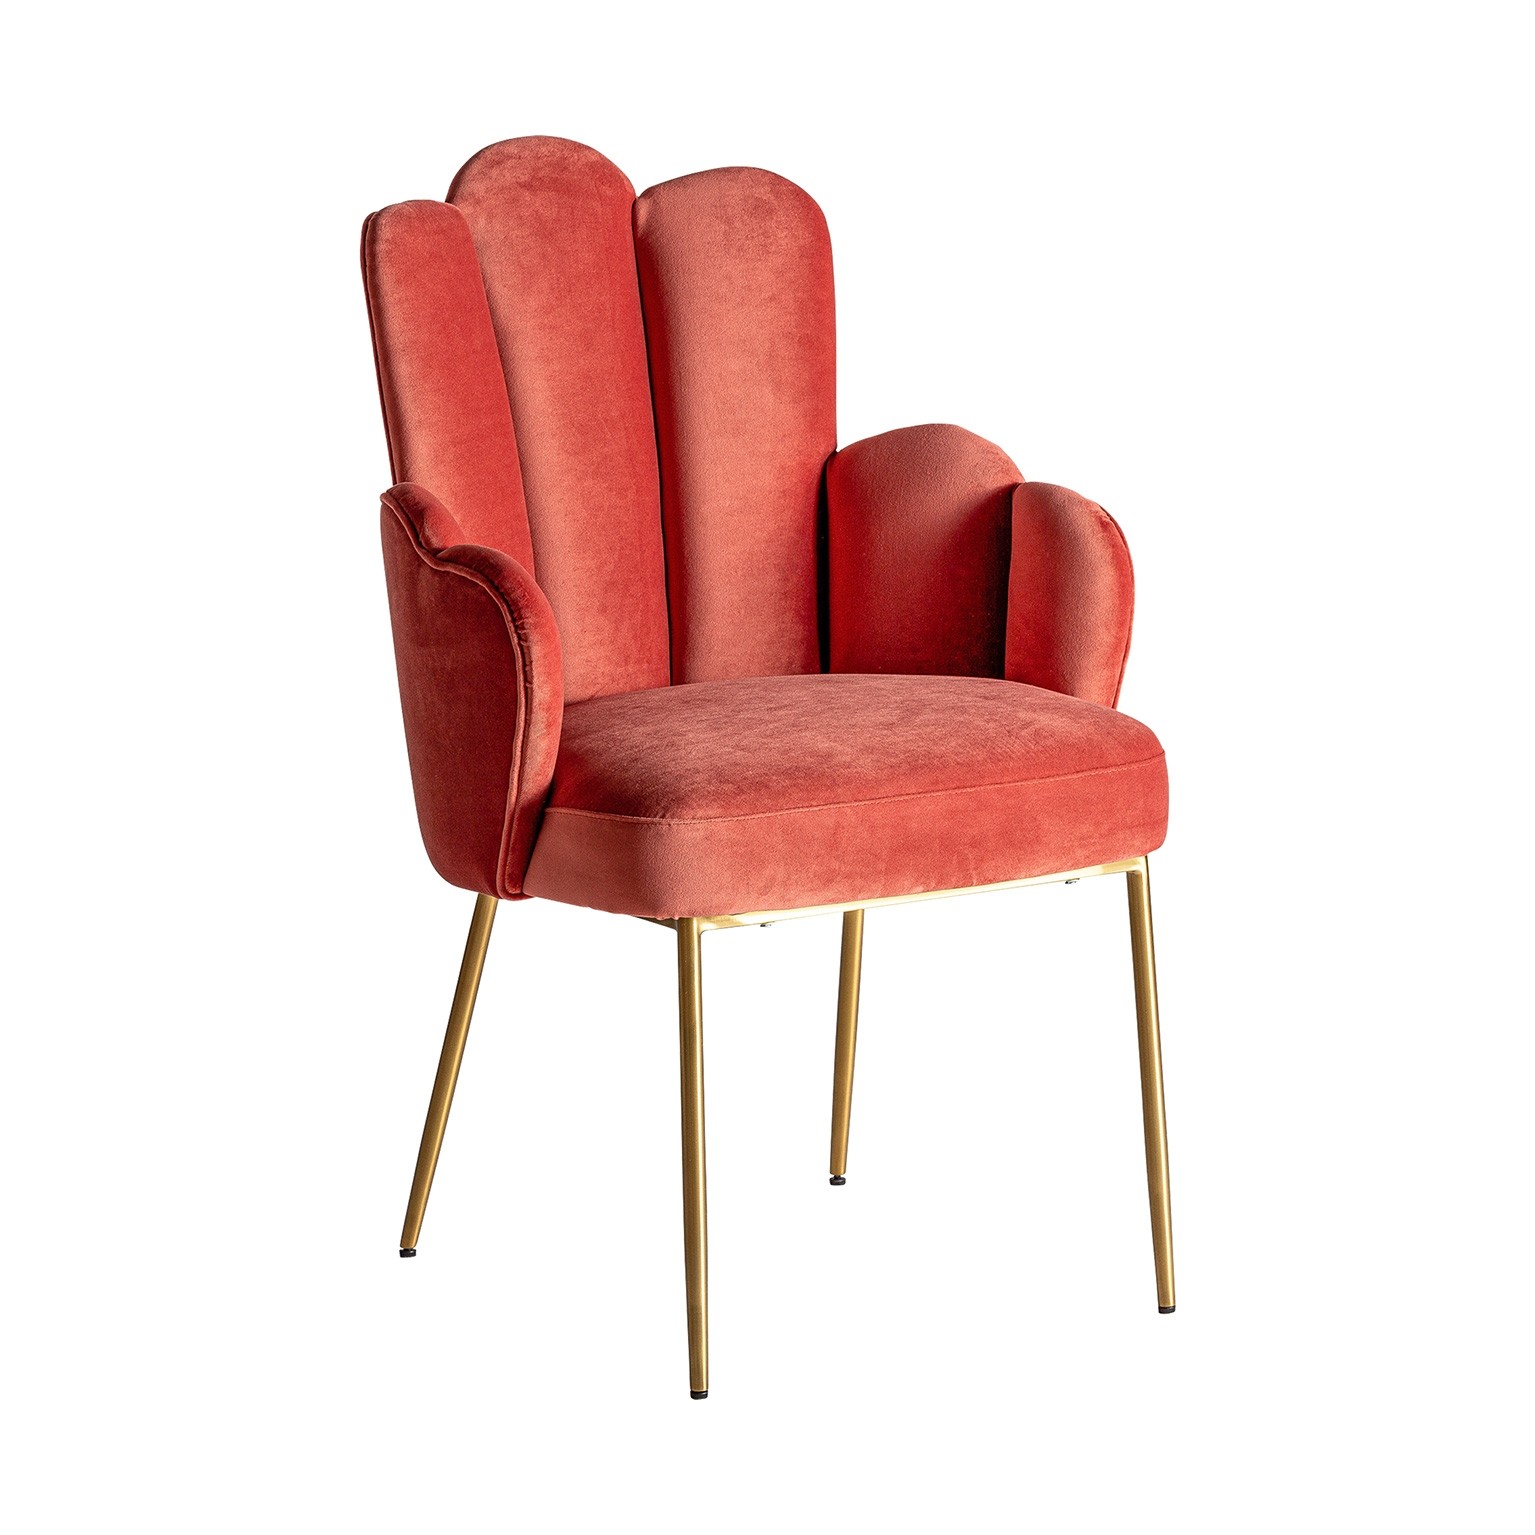 Estila Art-deco luxusní židle Silia lasturovitého tvaru se sametovým čalouněním korálové barvy a se zlatýma nohama